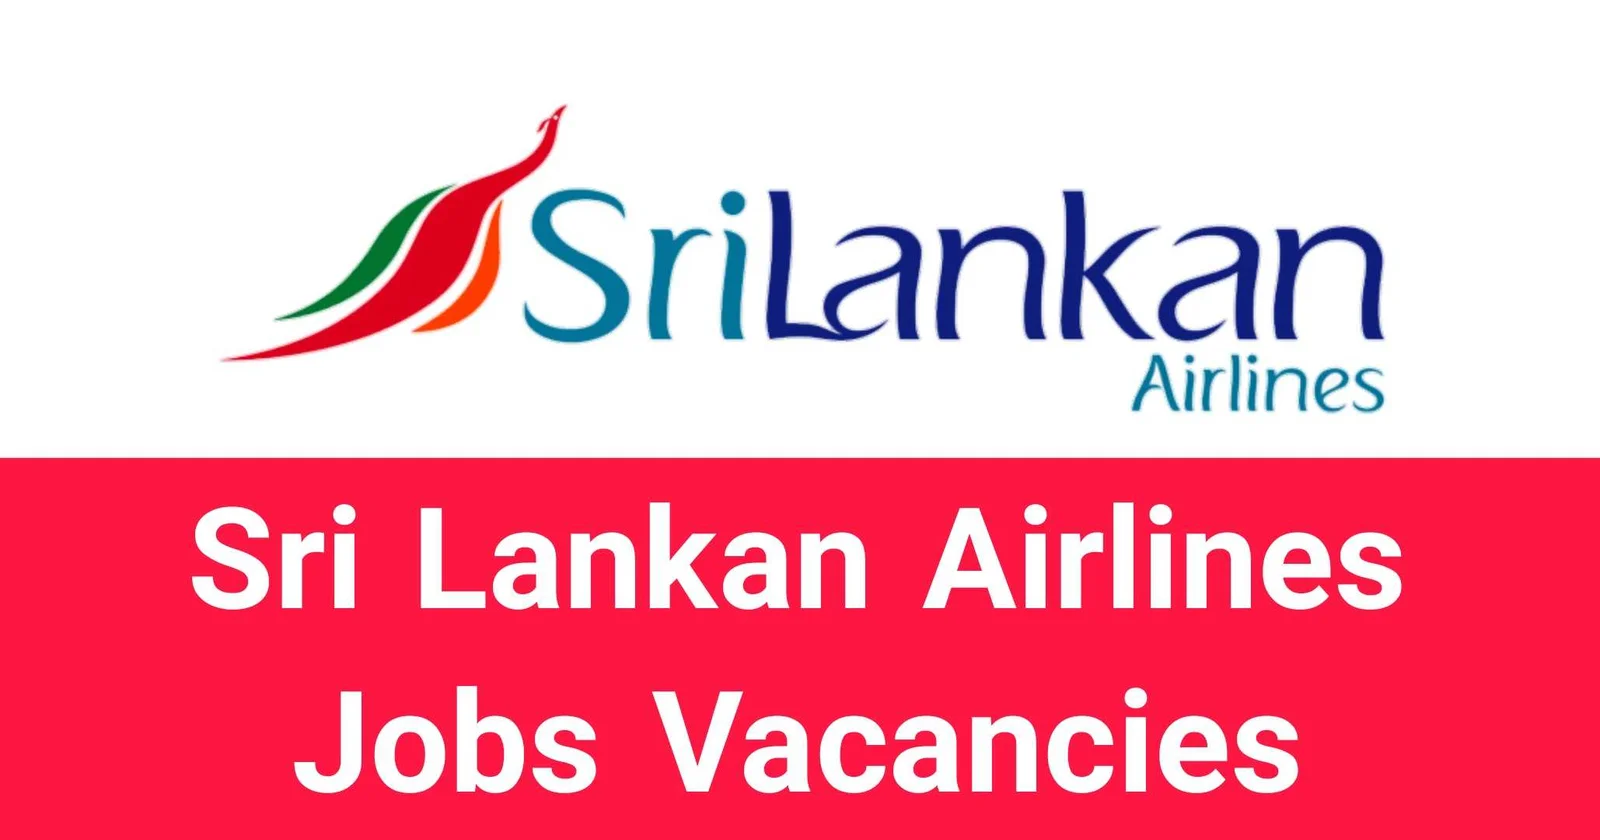 Sri Lankan Airlines Jobs Vacancies Recruitments